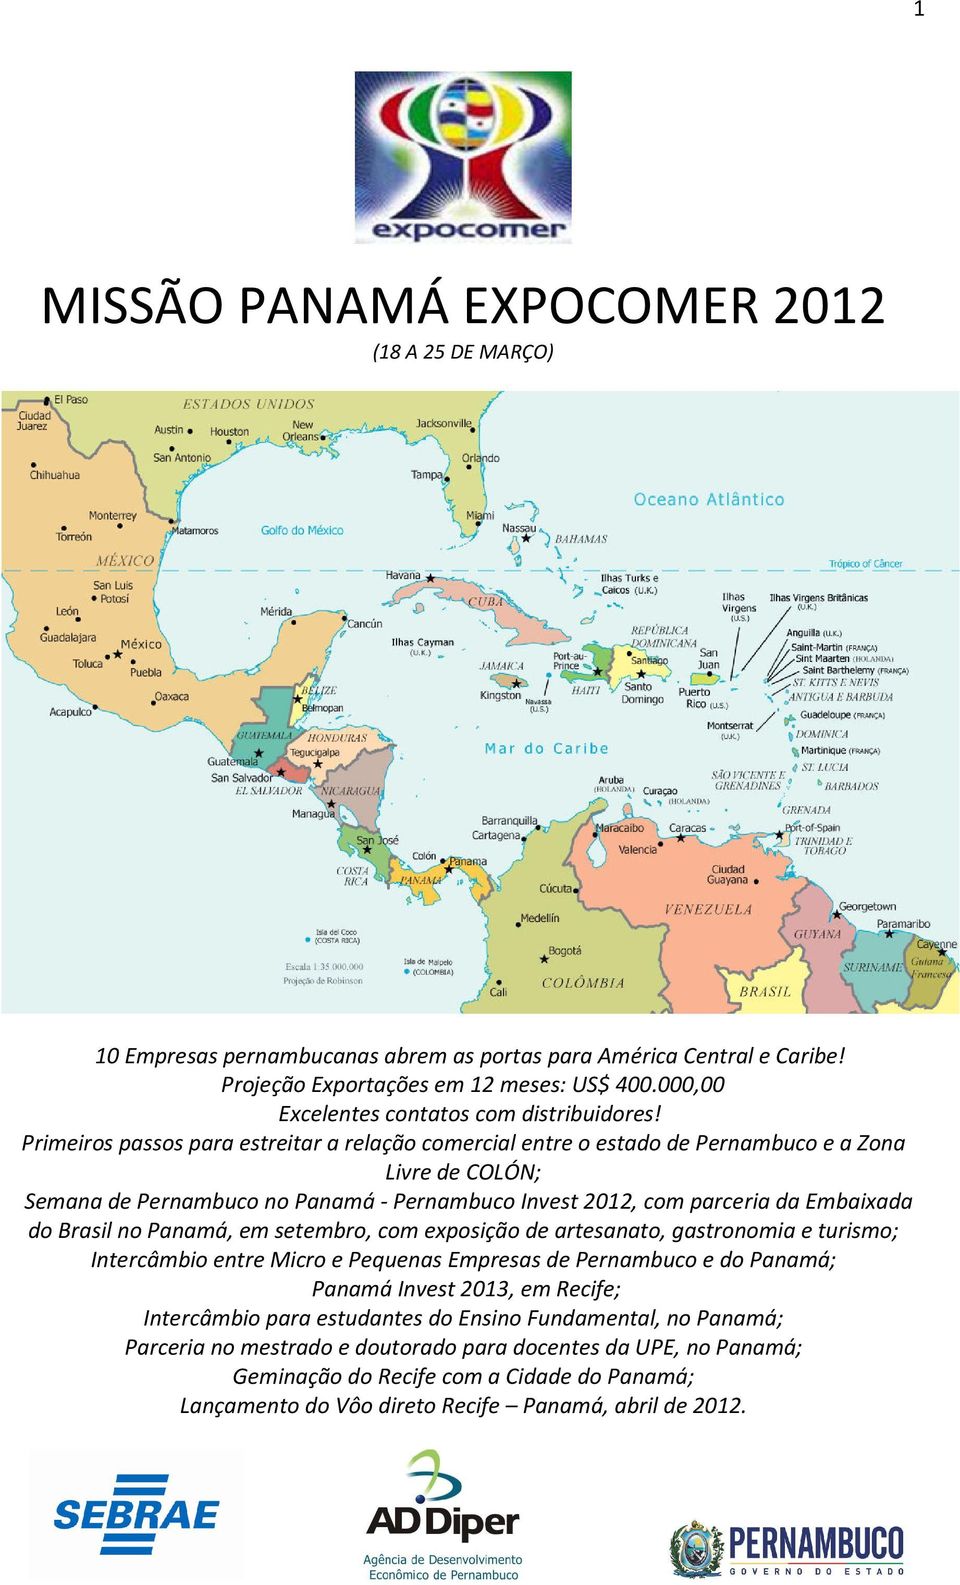 Primeiros passos para estreitar a relação comercial entre o estado de Pernambuco e a Zona Livre de COLÓN; Semana de Pernambuco no Panamá - Pernambuco Invest 2012, com parceria da Embaixada do Brasil